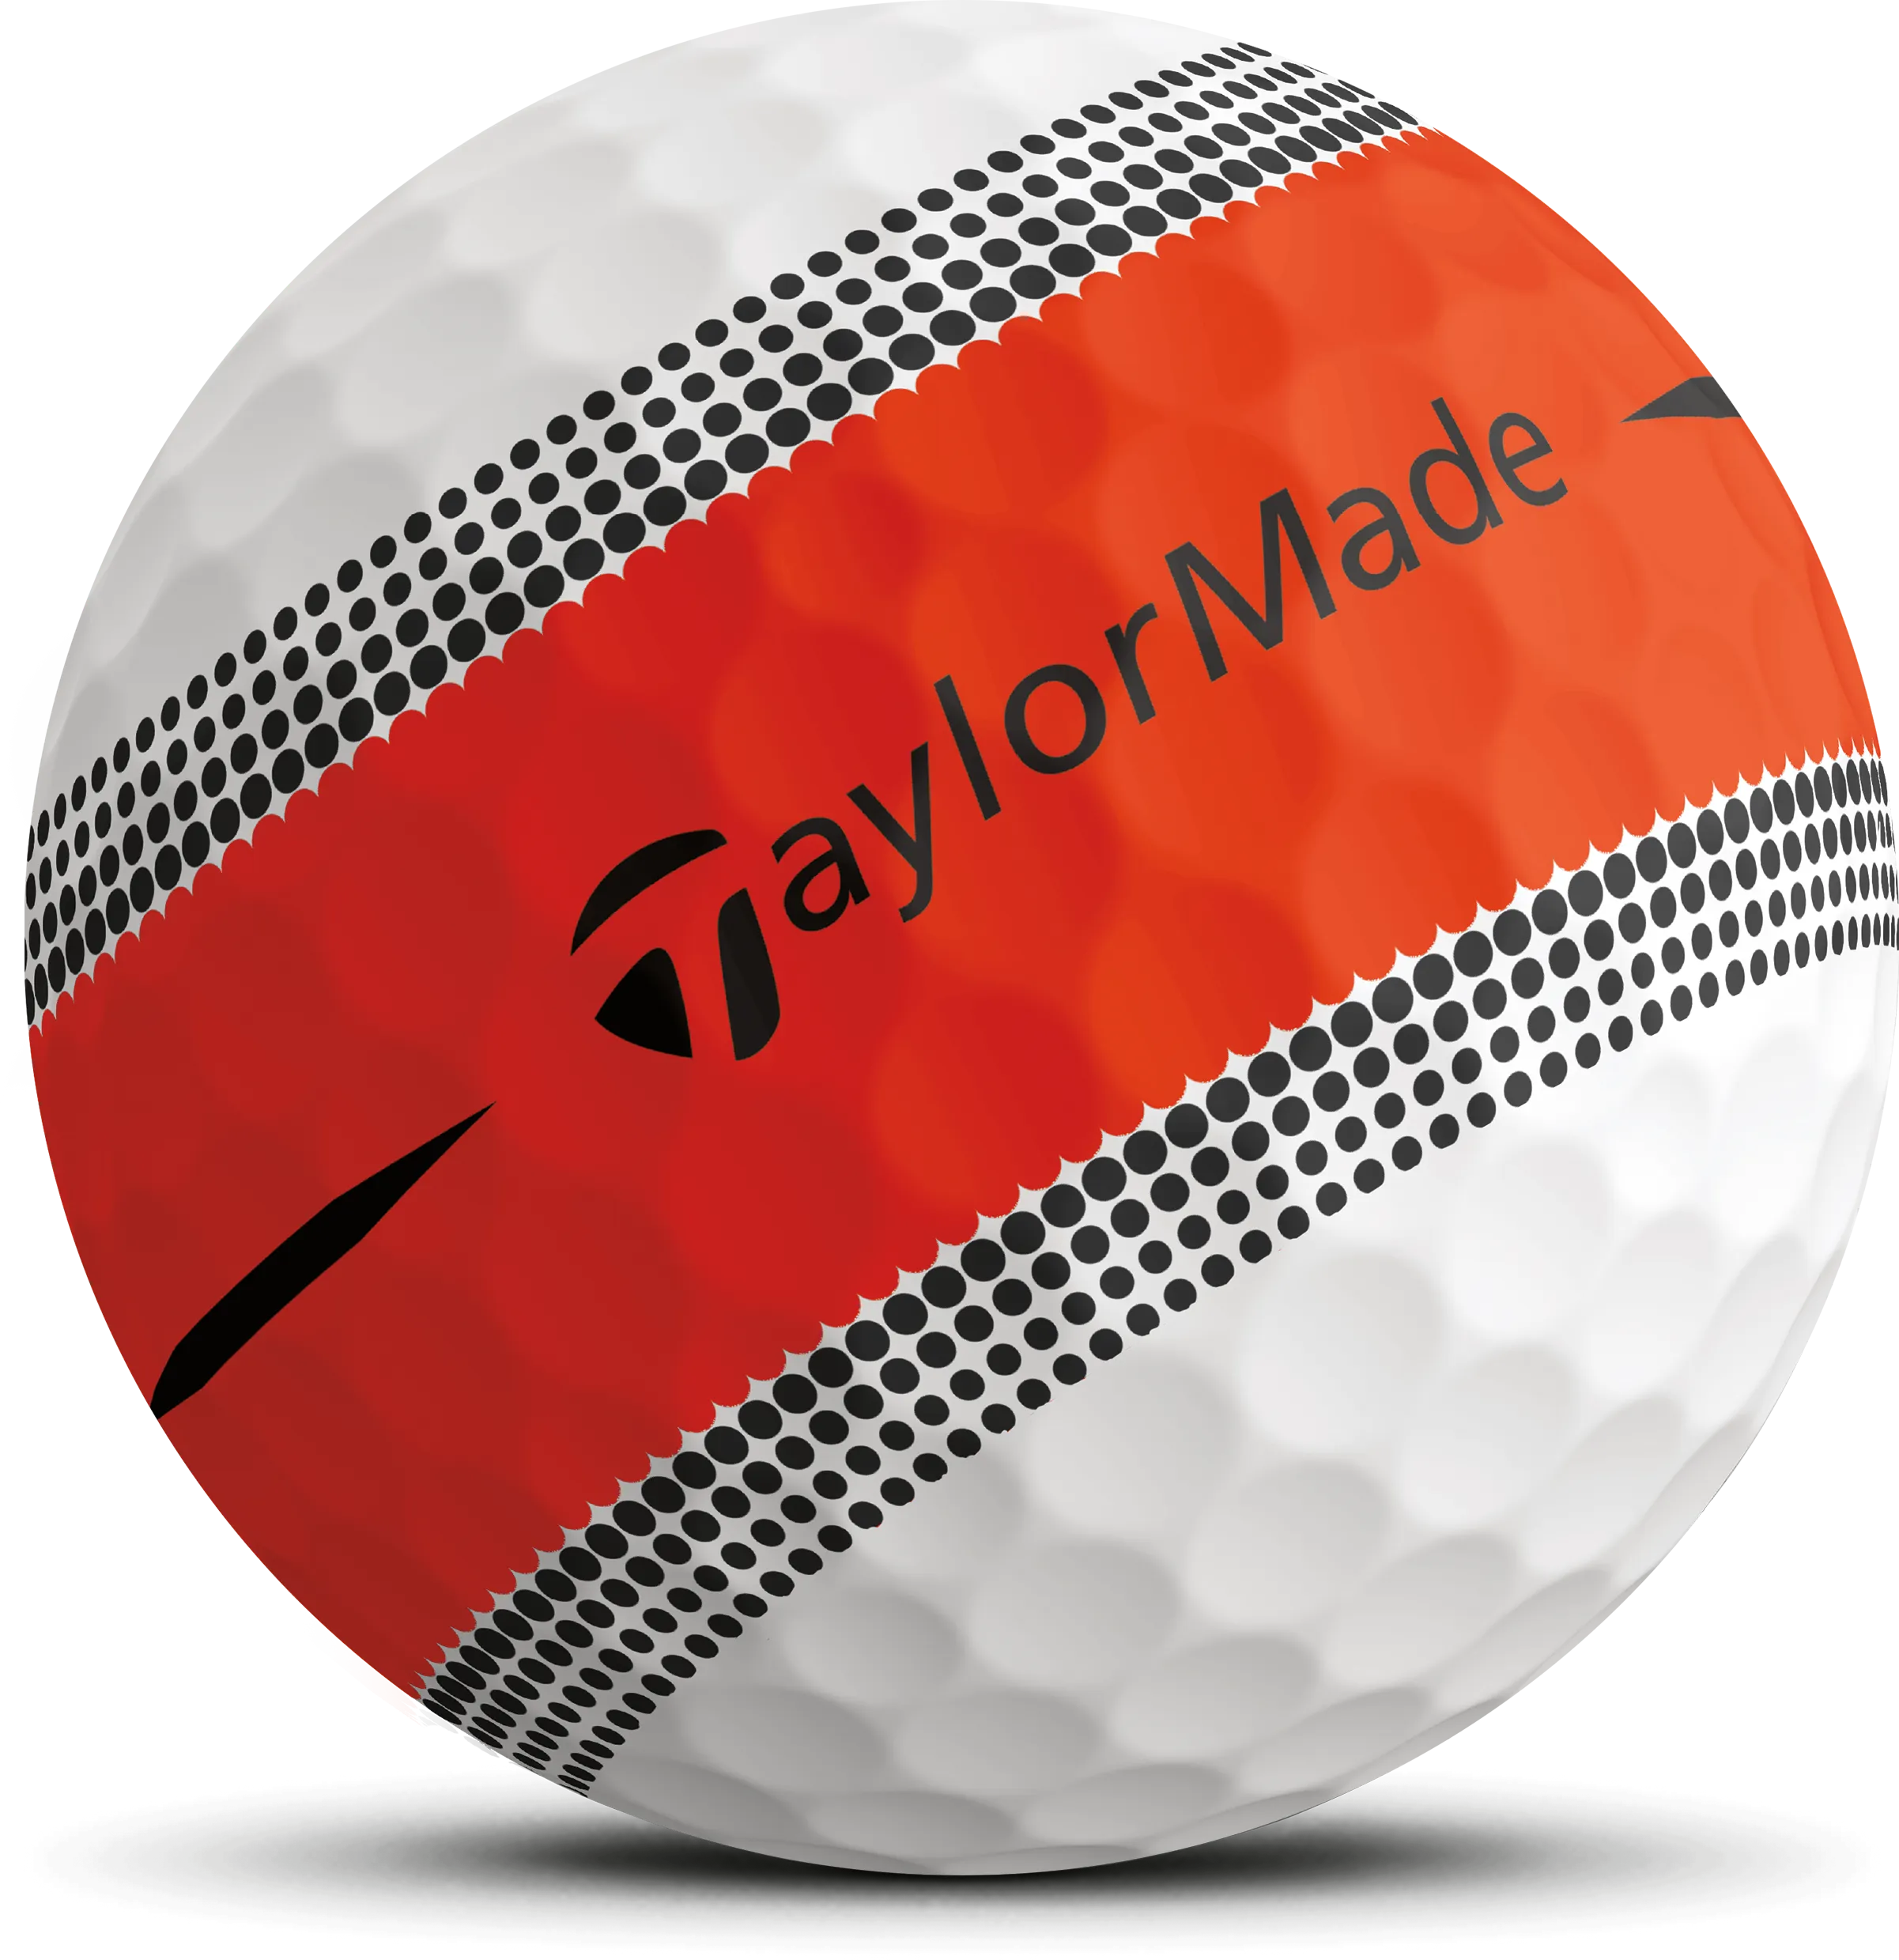 TaylorMade Tour Response Stripe Golfbälle, weiß/orange